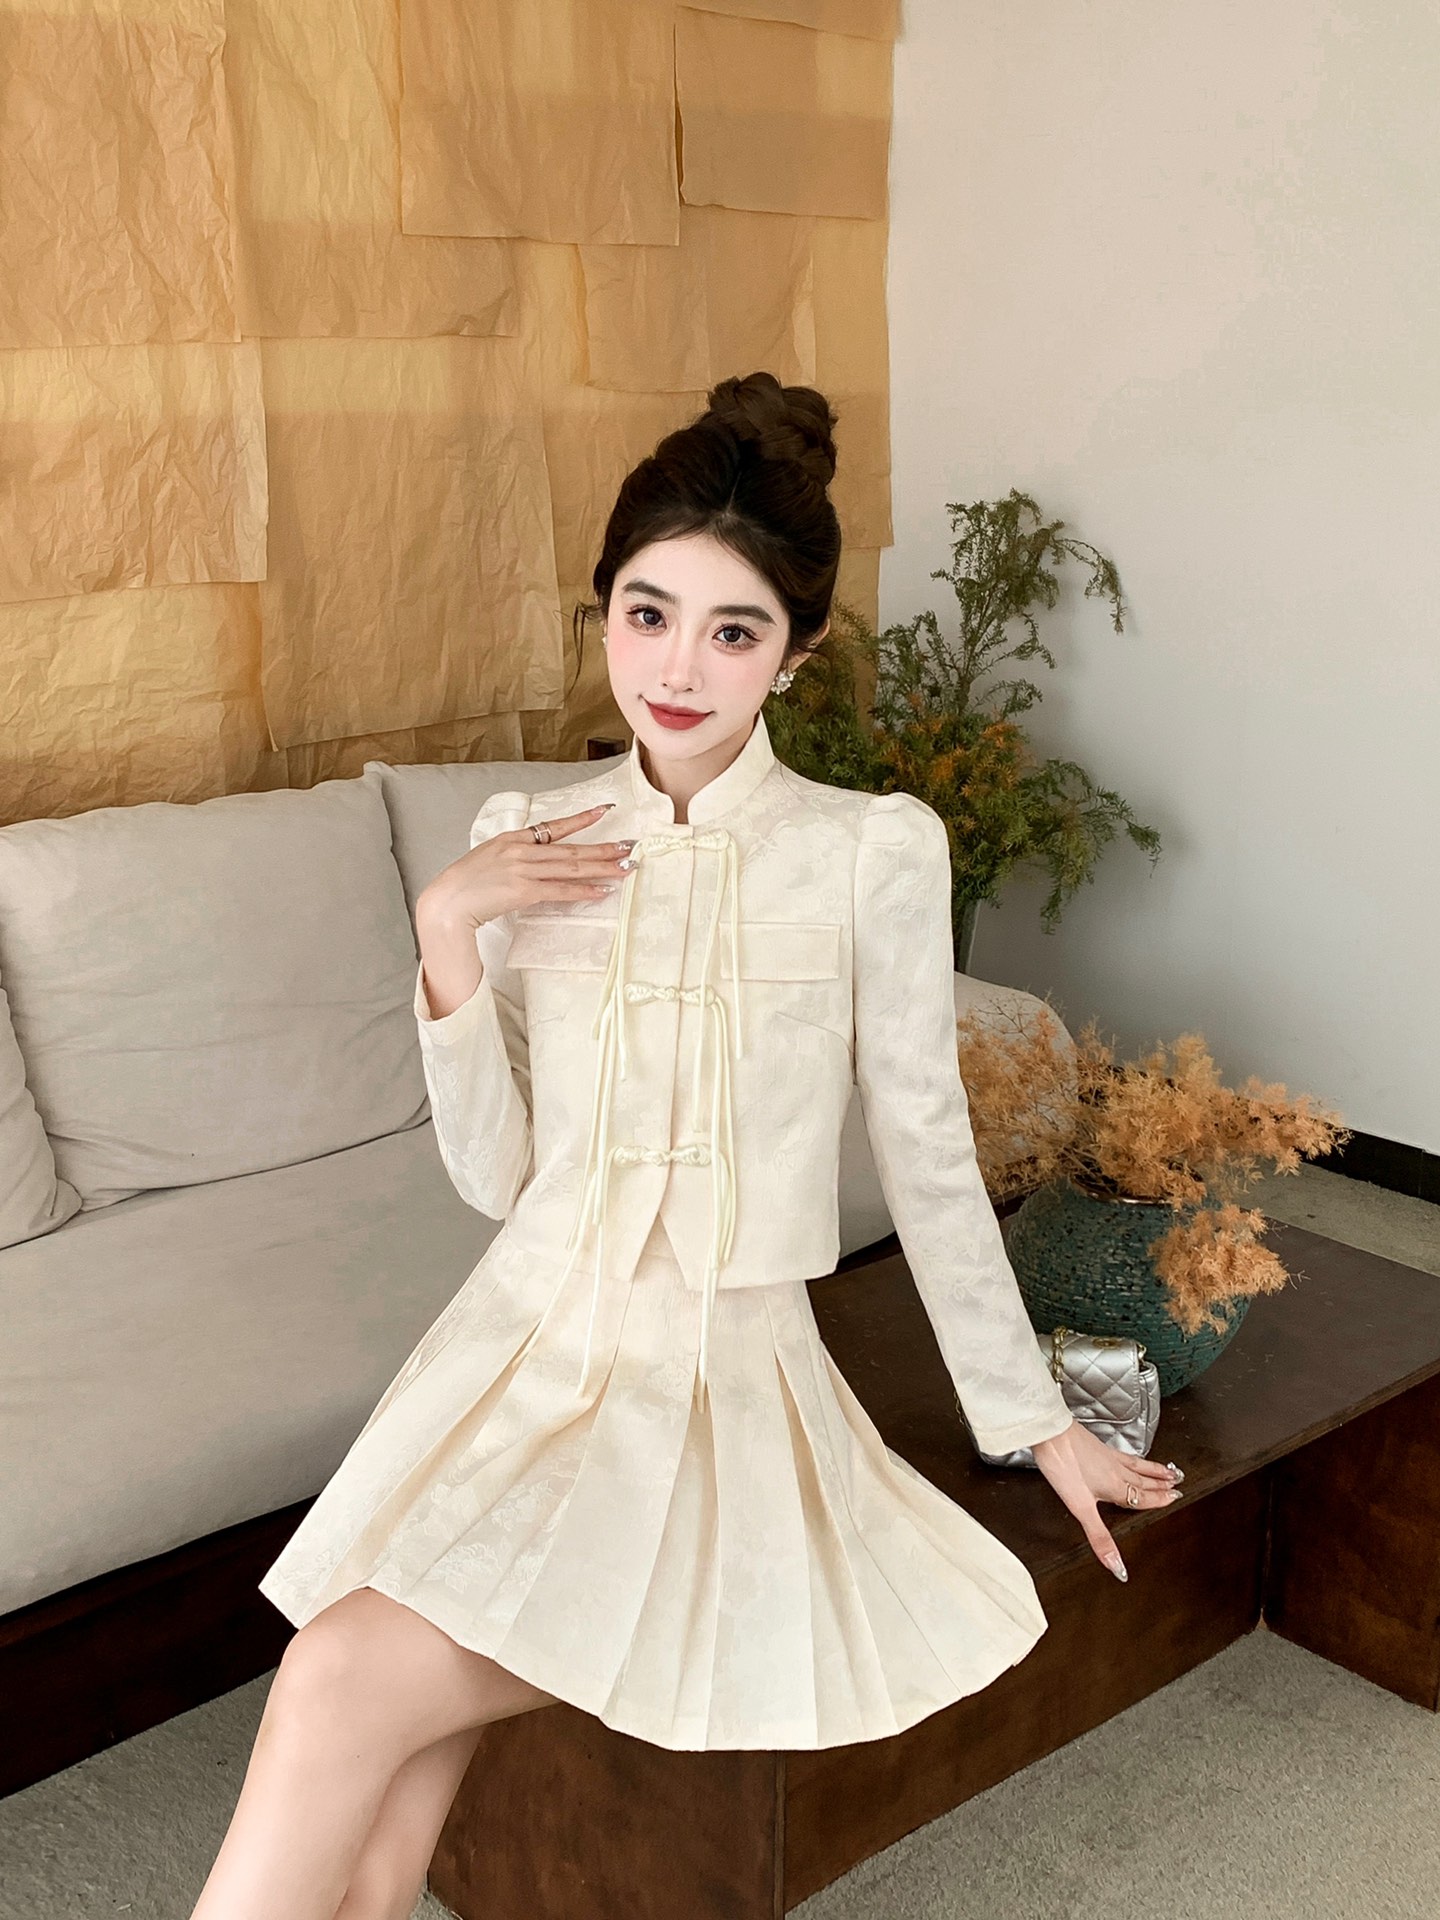 シャネル ロング スカートスーパーコピー セット レディース シンプル ファッション 優雅 快適 ホワイト_5